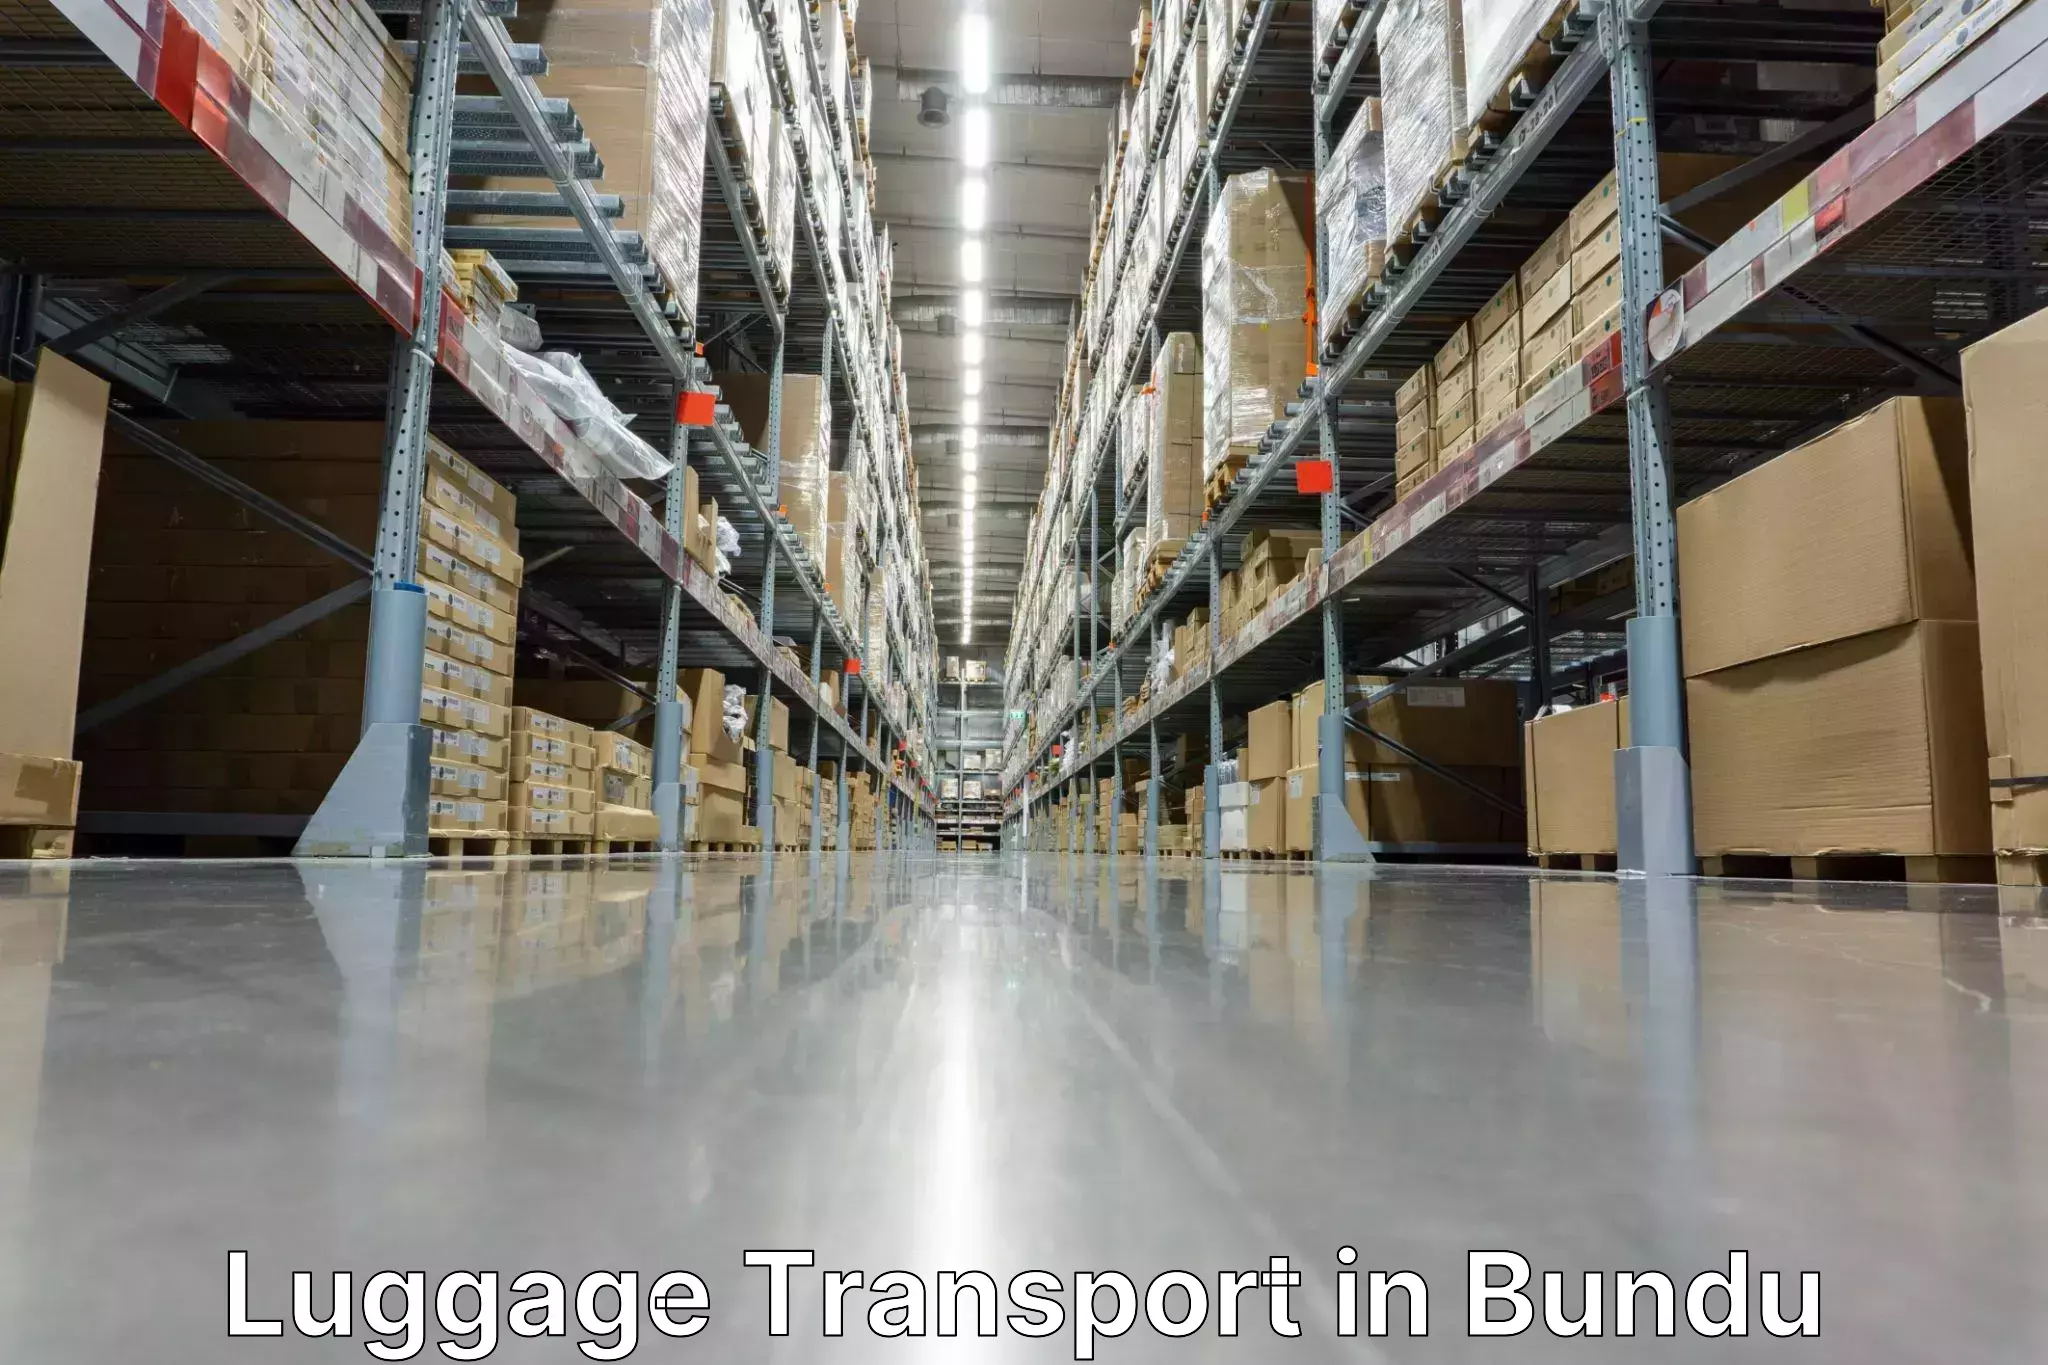 Luggage dispatch service in Bundu